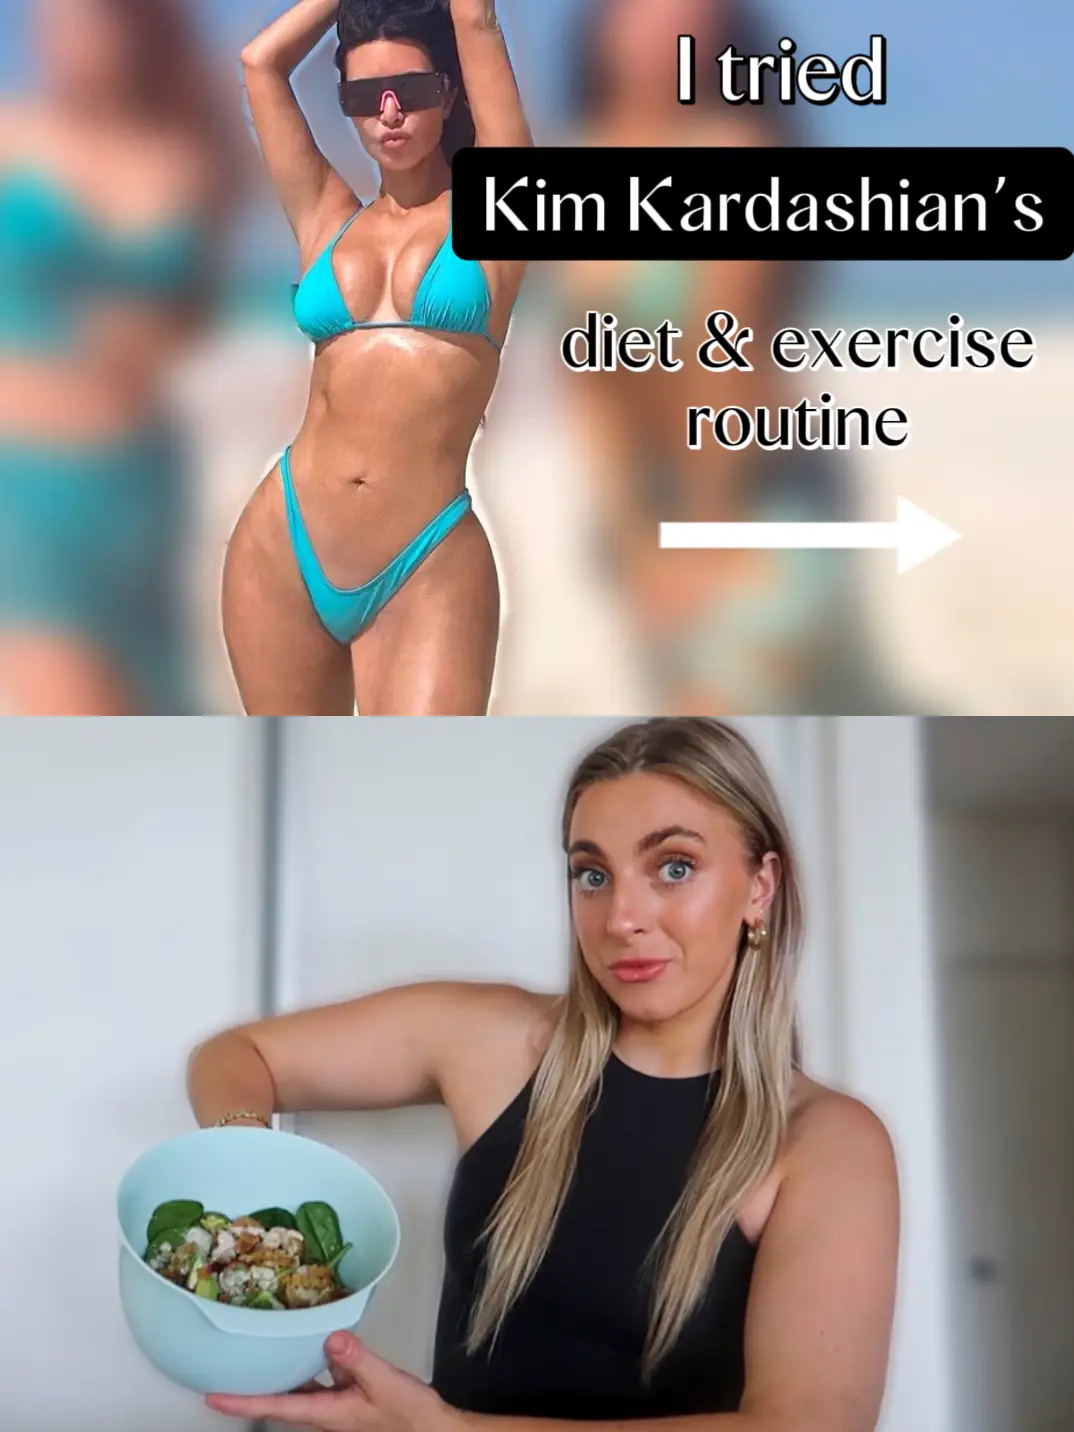 Kim Kardashian's Skims micro bikini compared to tortilla chips